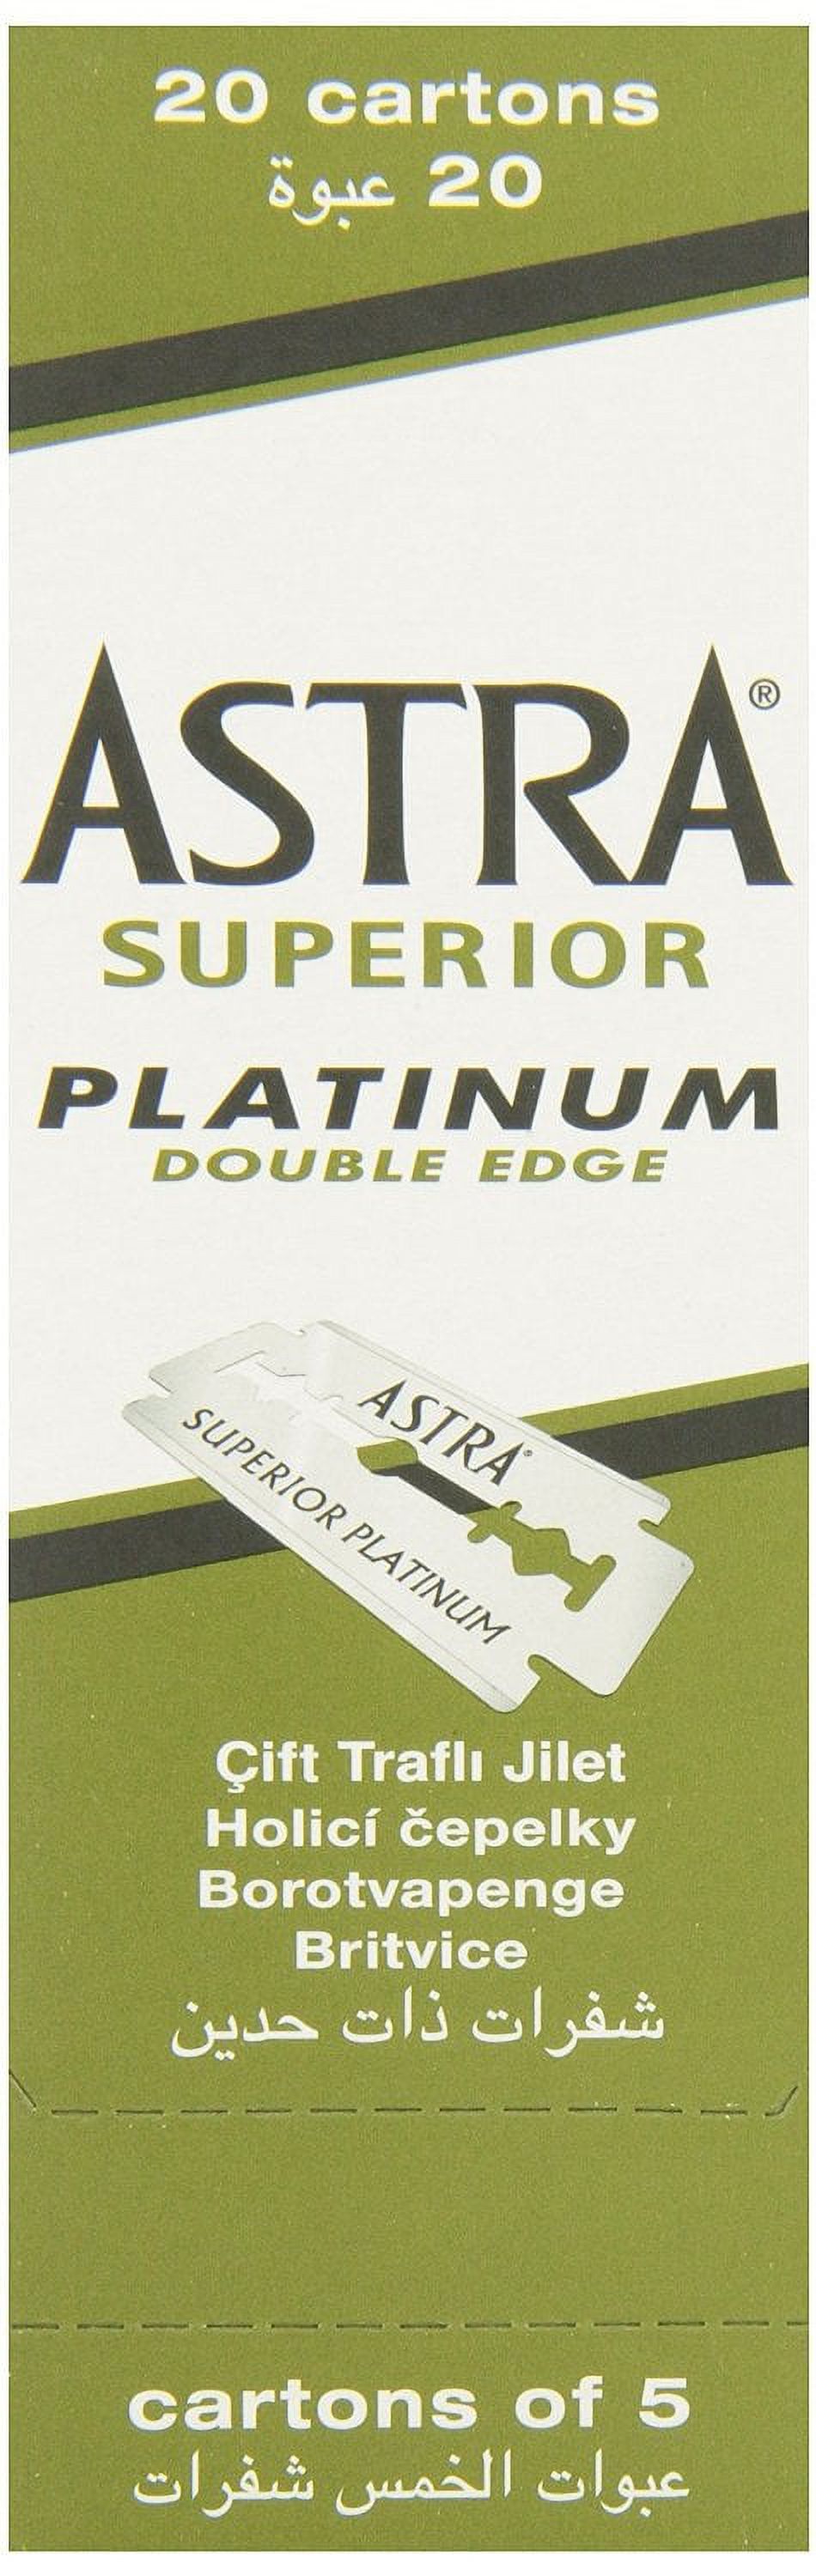 100 Astra Superior Premium Platinum Double Edge Safety Razor Blades - image 1 of 3